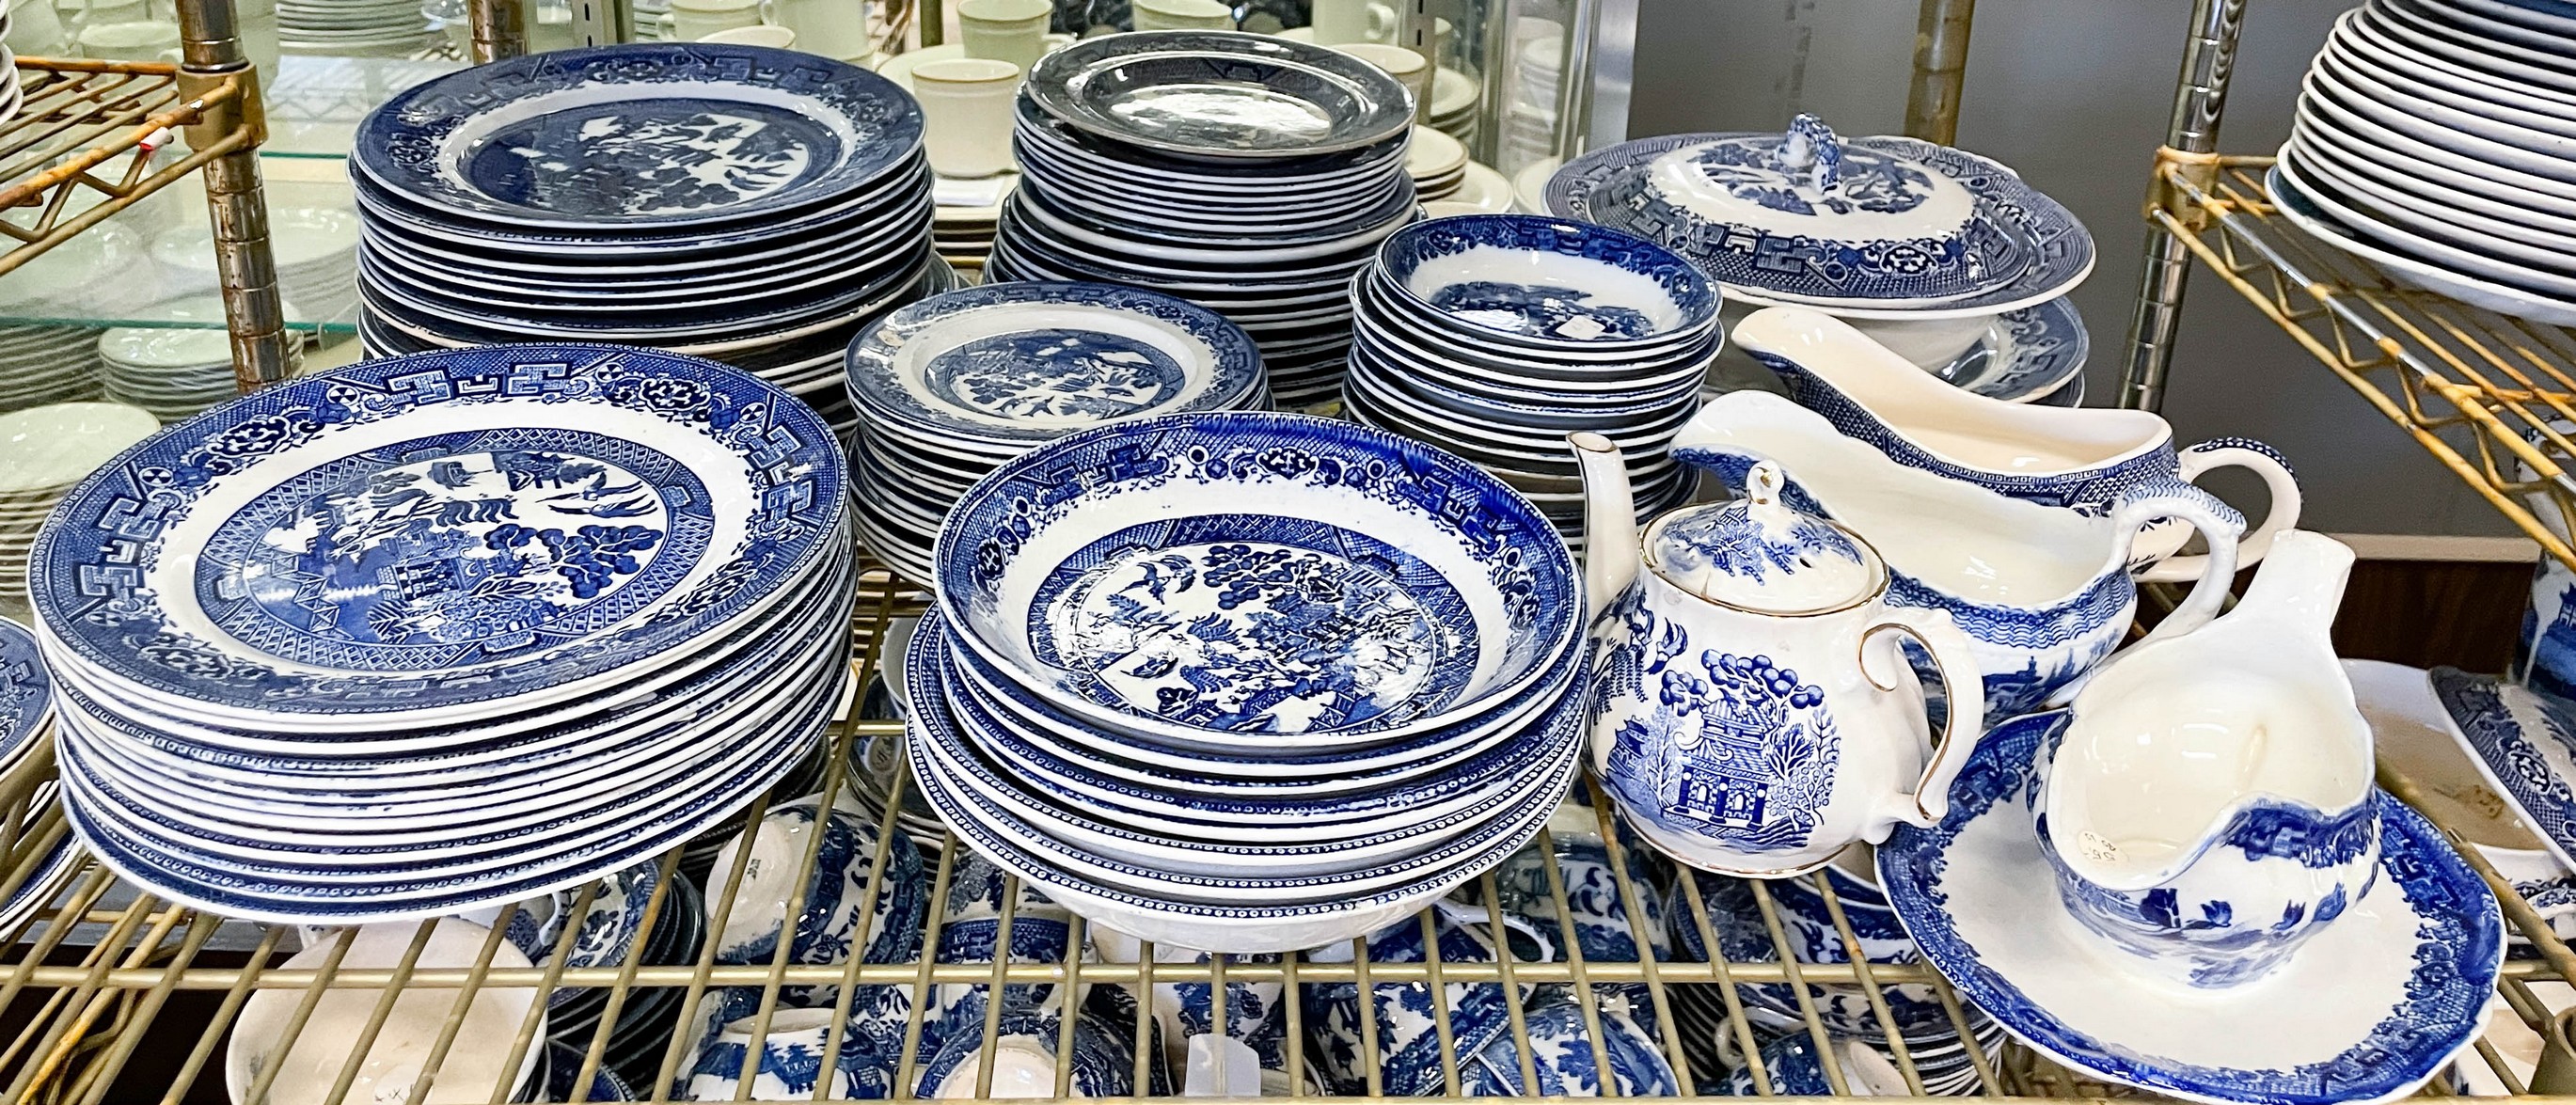  90 Pcs Blue Willow porcelain 27a84d